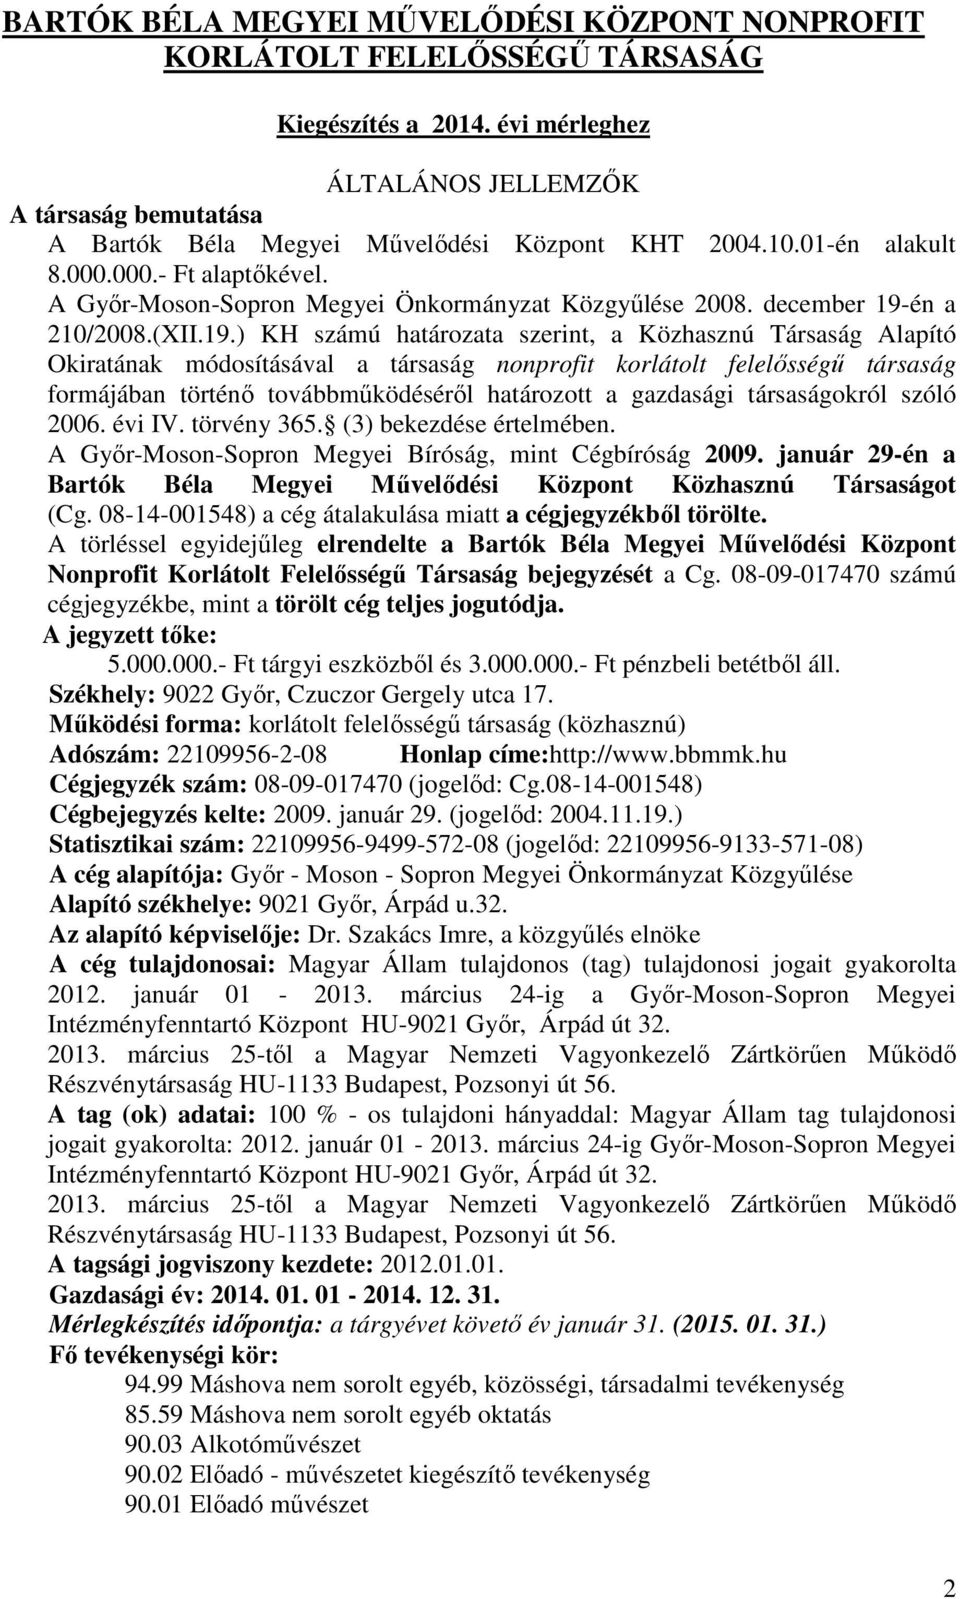 A Gyır-Moson-Sopron Megyei Önkormányzat Közgyőlése 2008. december 19-